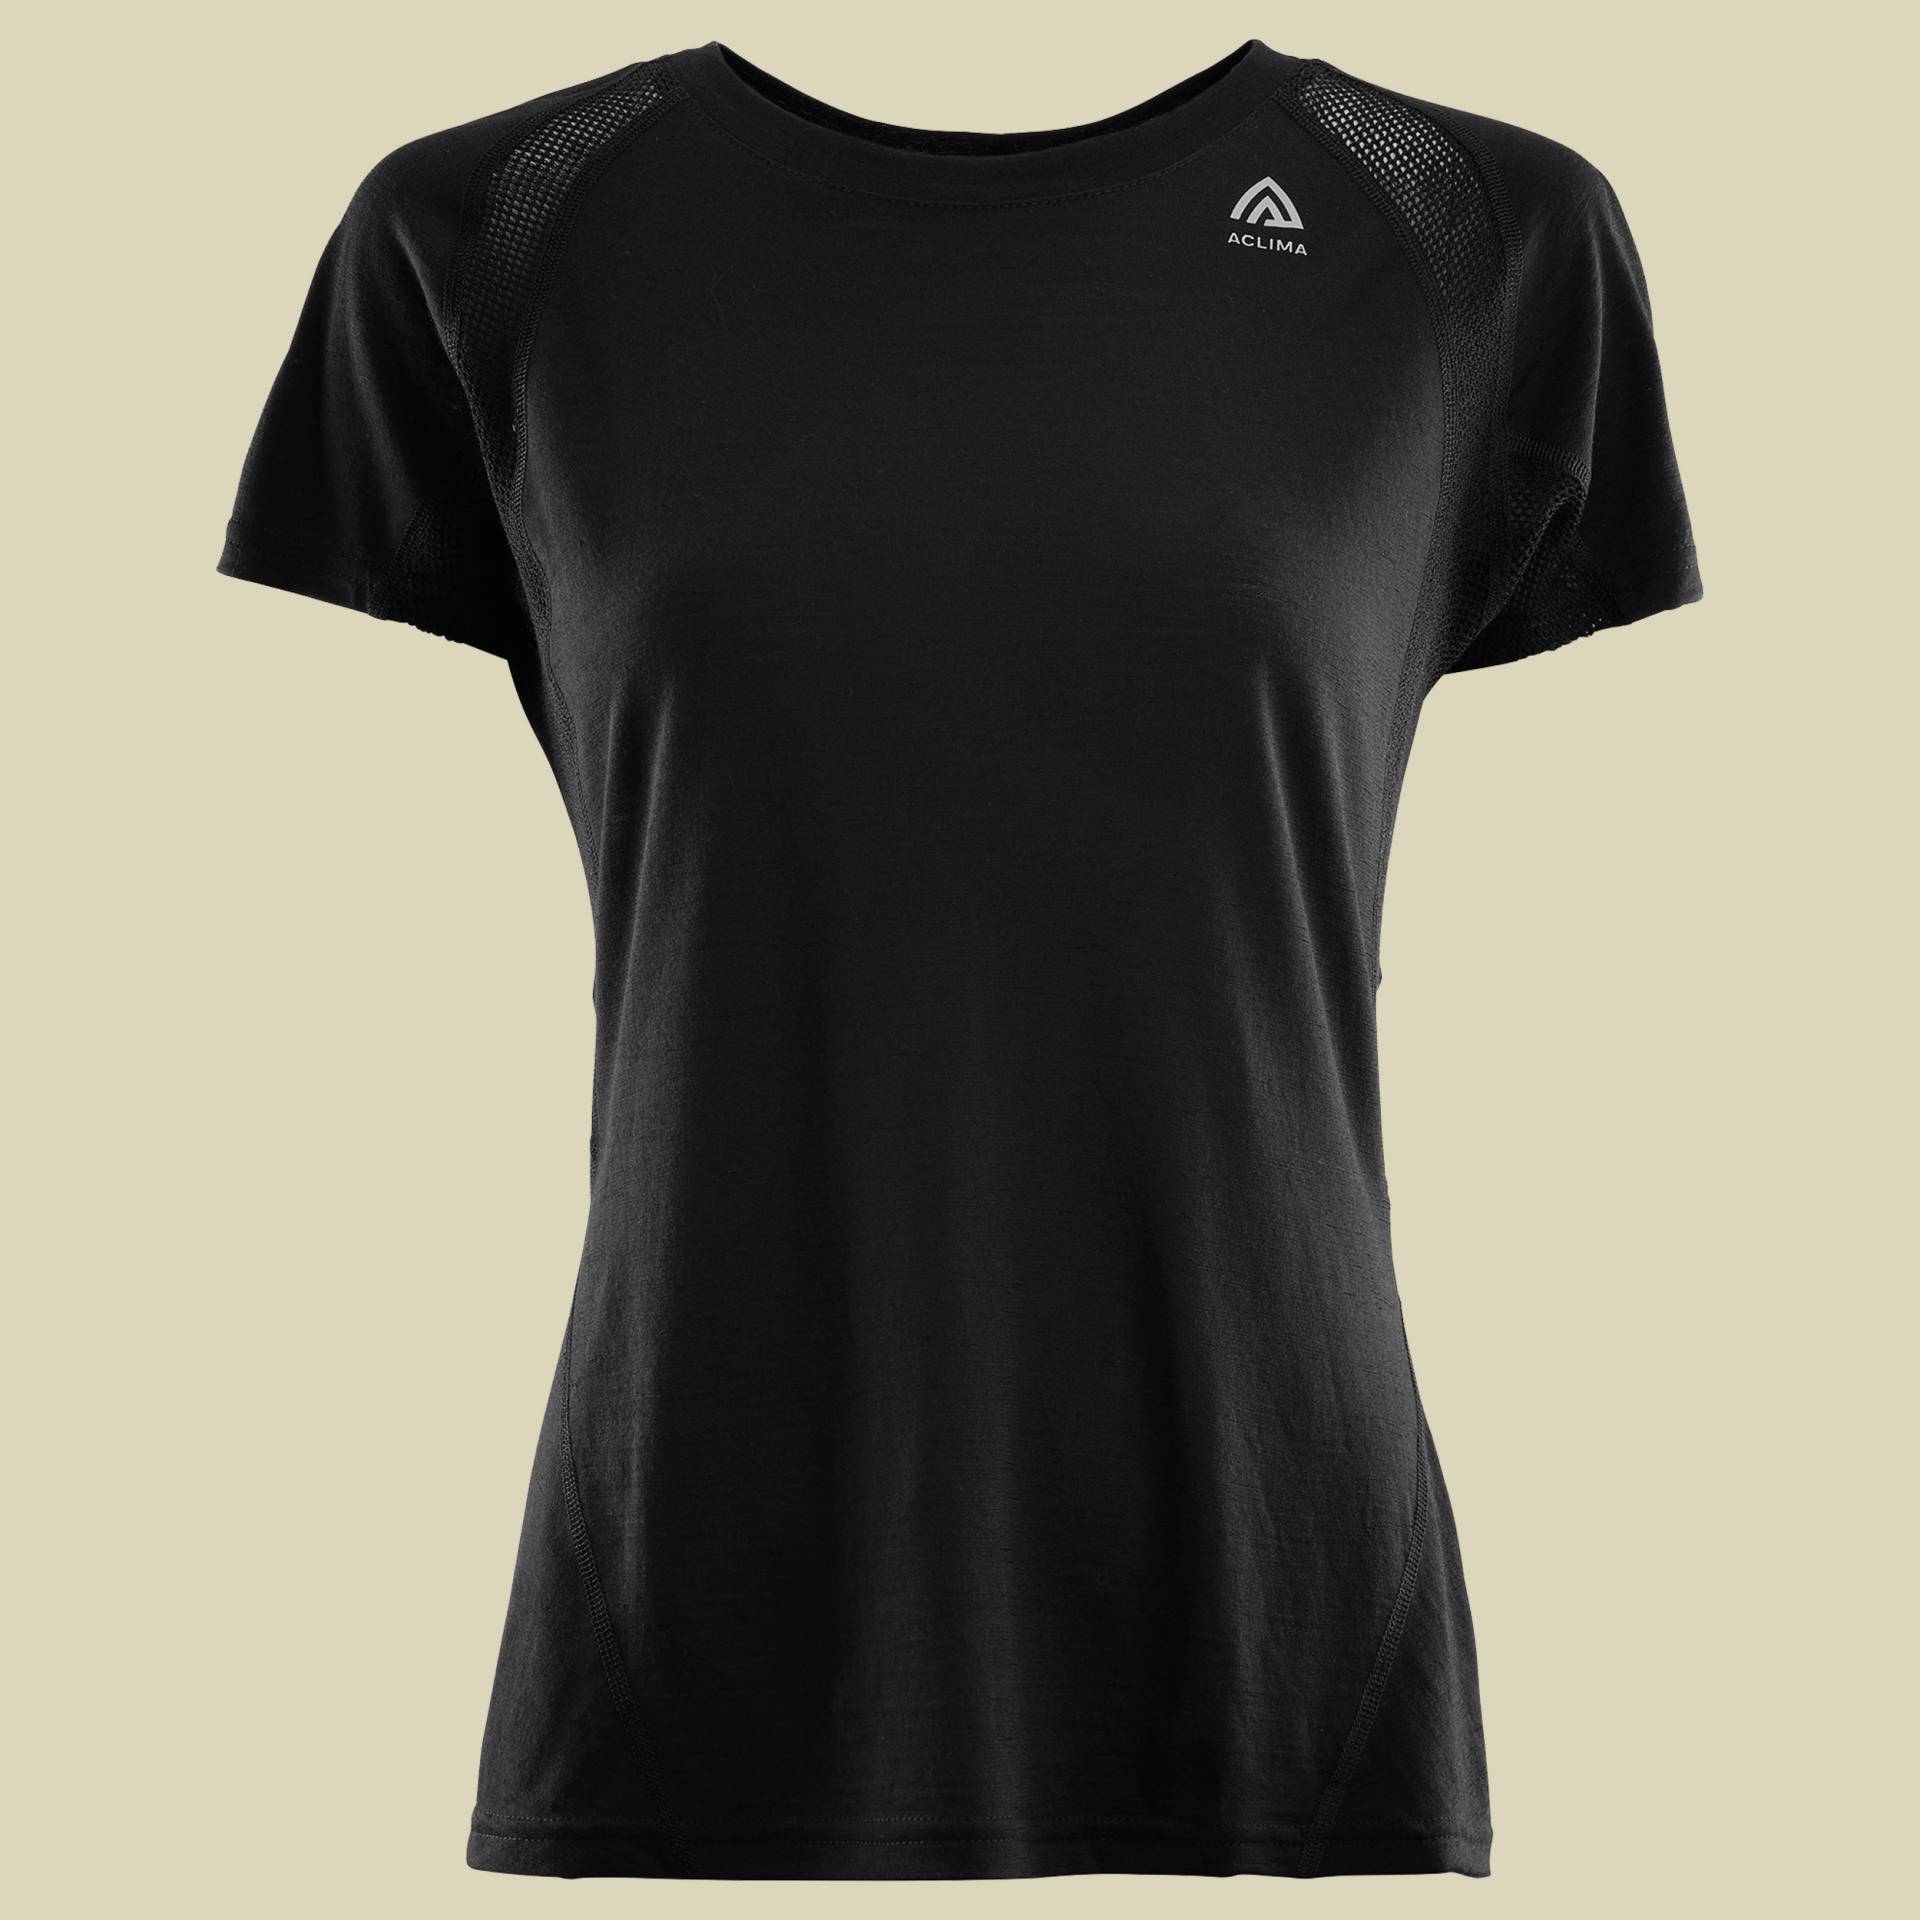 LightWool Sports T-Shirt Women Größe S Farbe jet black von aclima